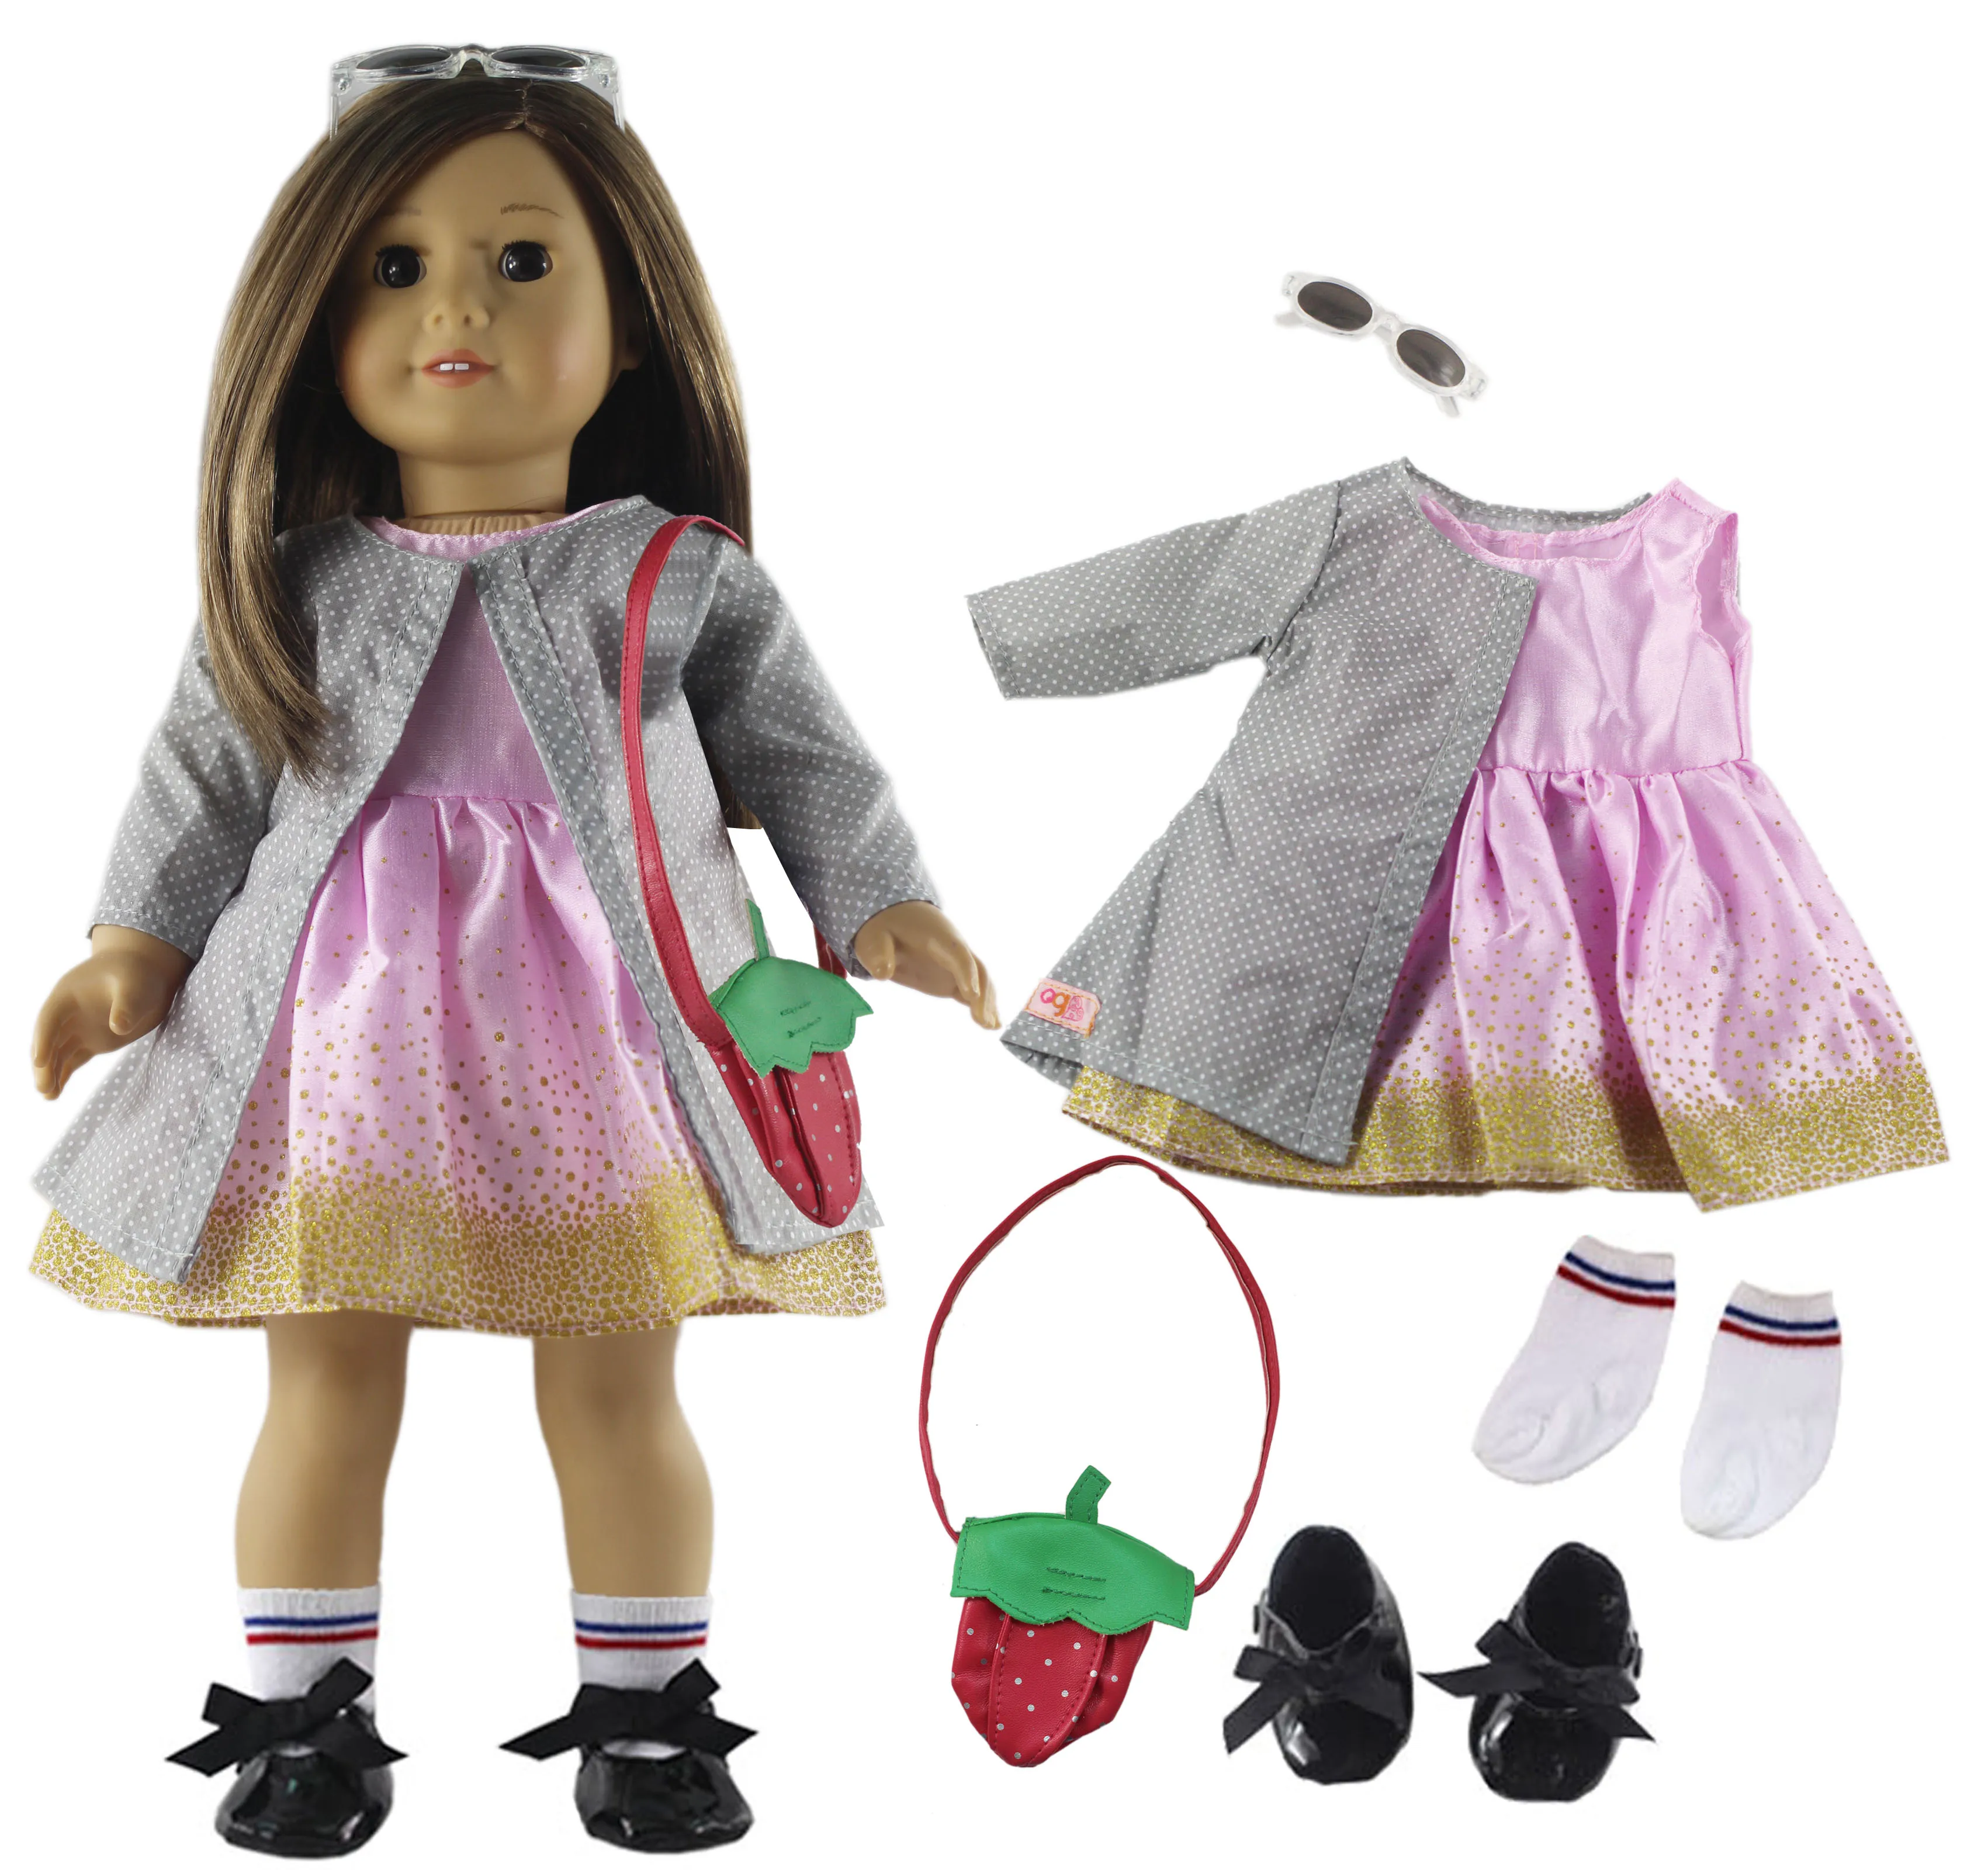 1 комплект Одежда для кукол наряд Одежда Обувь для 18 дюймов американская кукла много стилей на выбор A20 - Цвет: 6 PCS Outfit A05